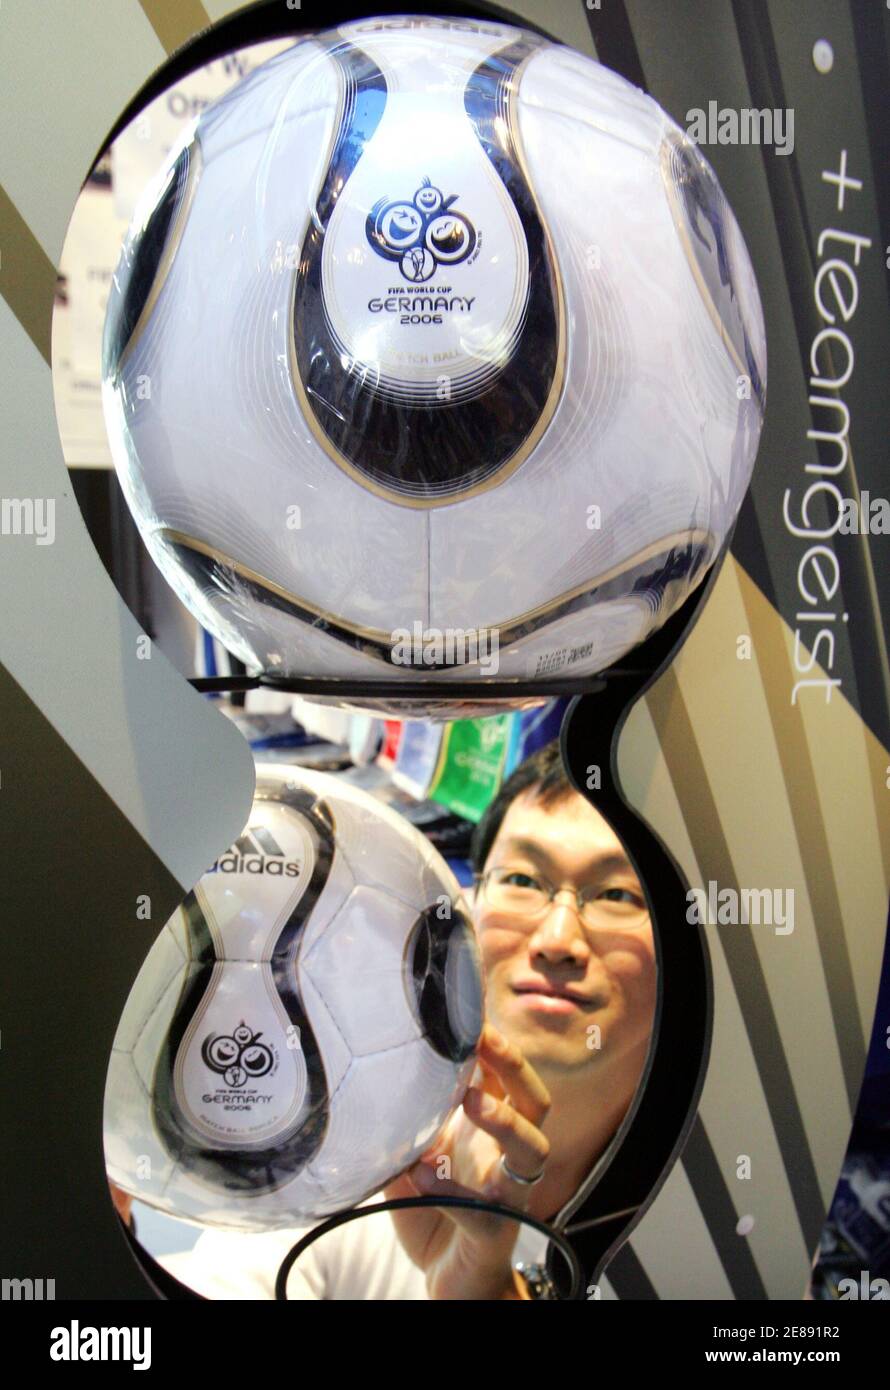 Un employé d'un magasin japonais présente le ballon de football officiel de  la coupe du monde 'Teamgeist' à vendre au magasin officiel de la coupe du  monde de la FIFA 2006 exploité